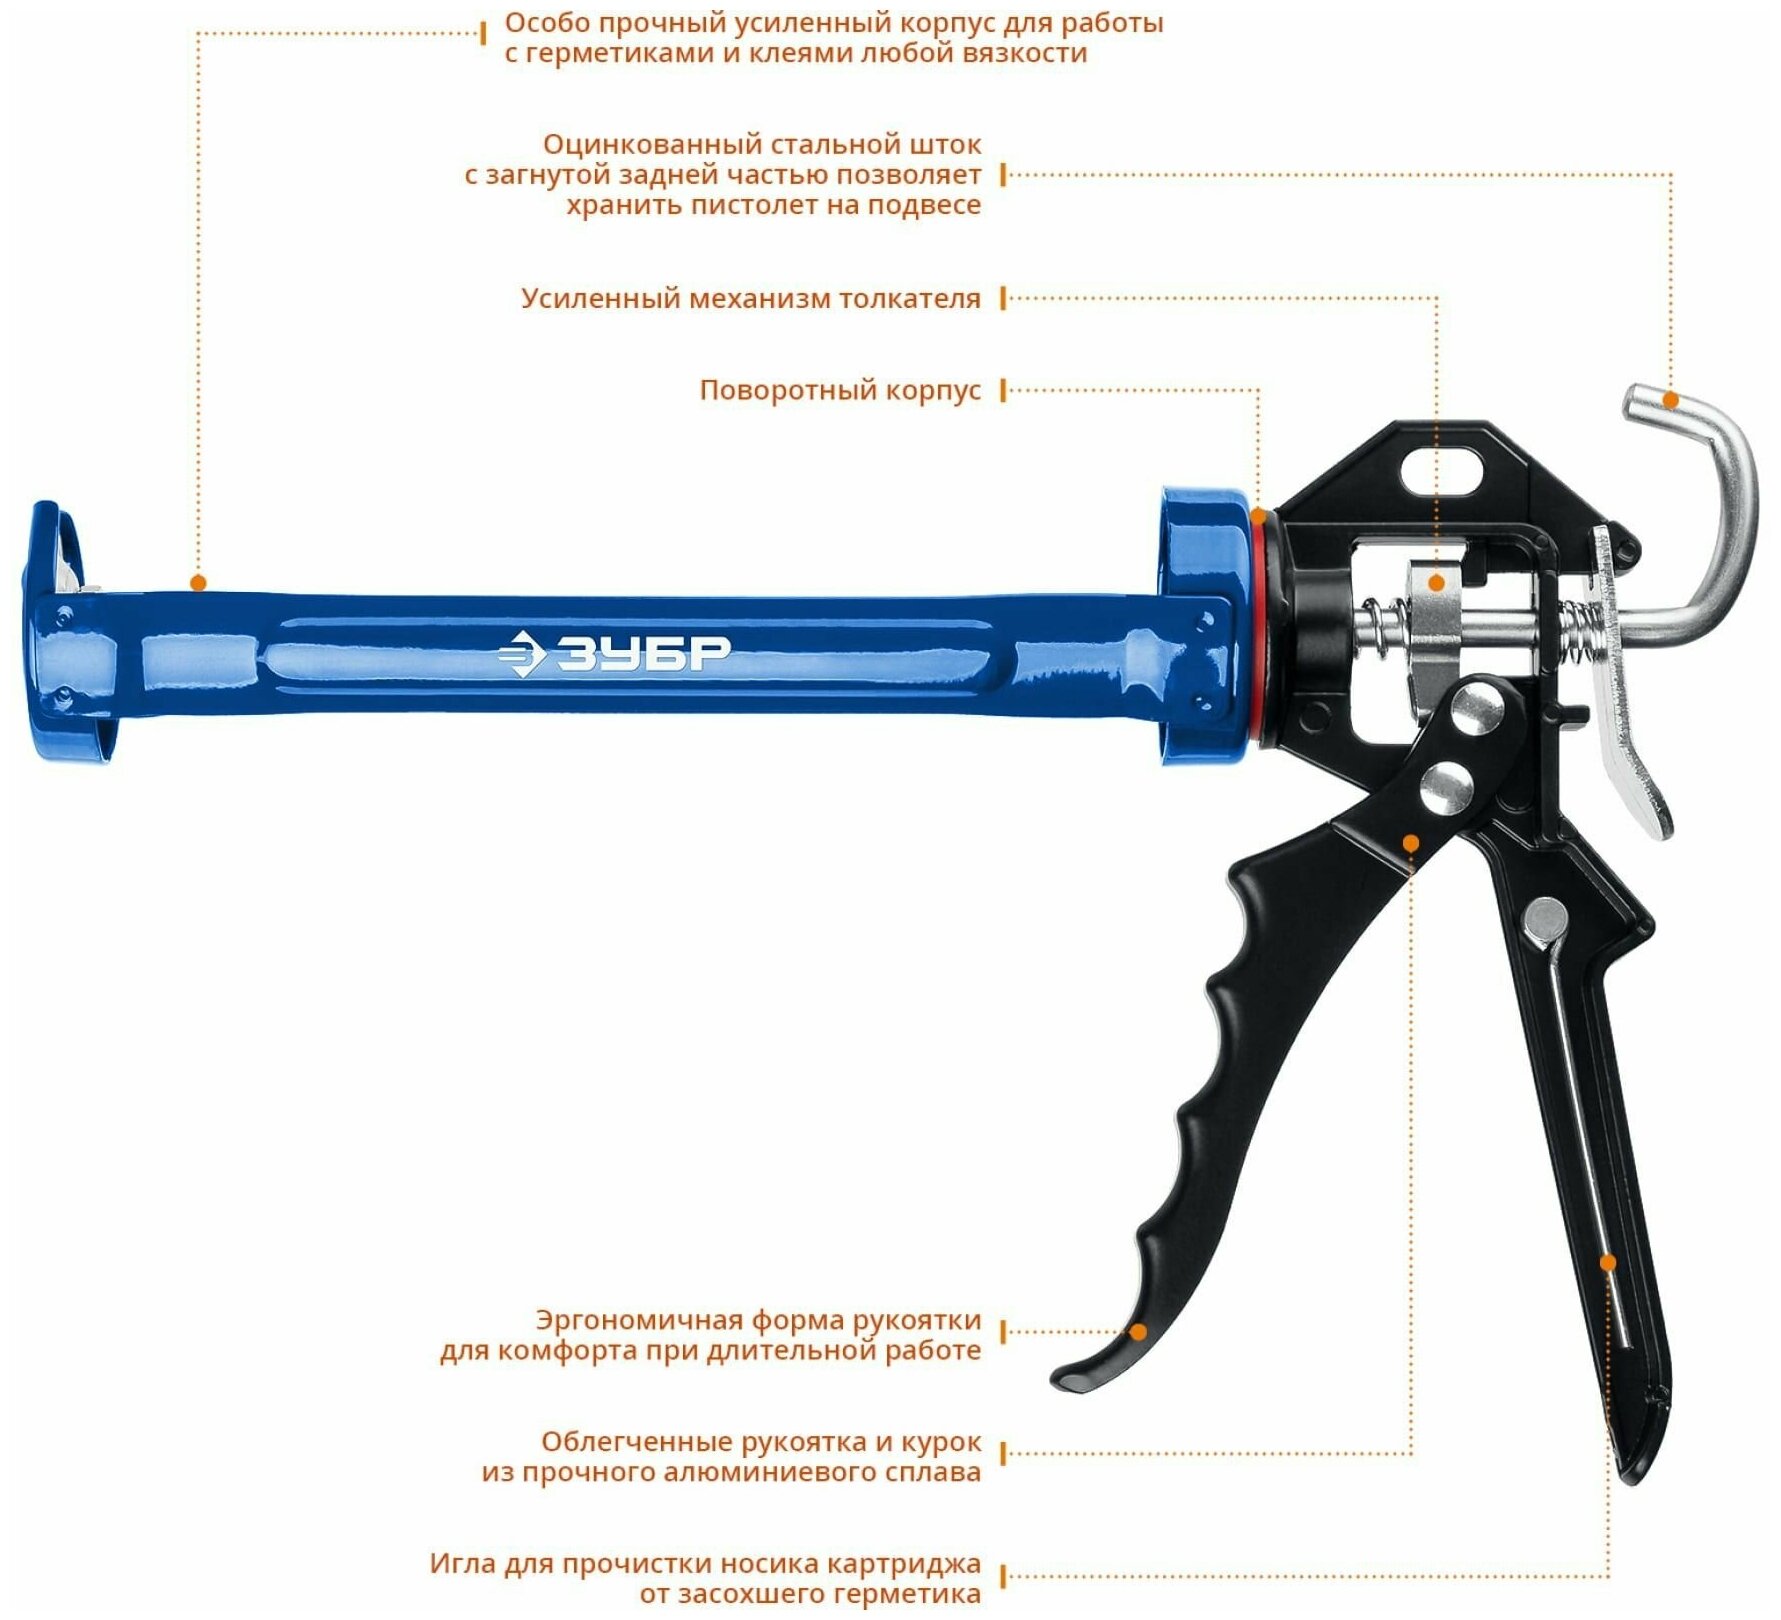 ЗУБР 310 мл усиленный поворотный, скелетный пистолет для герметика, профессионал (06635)